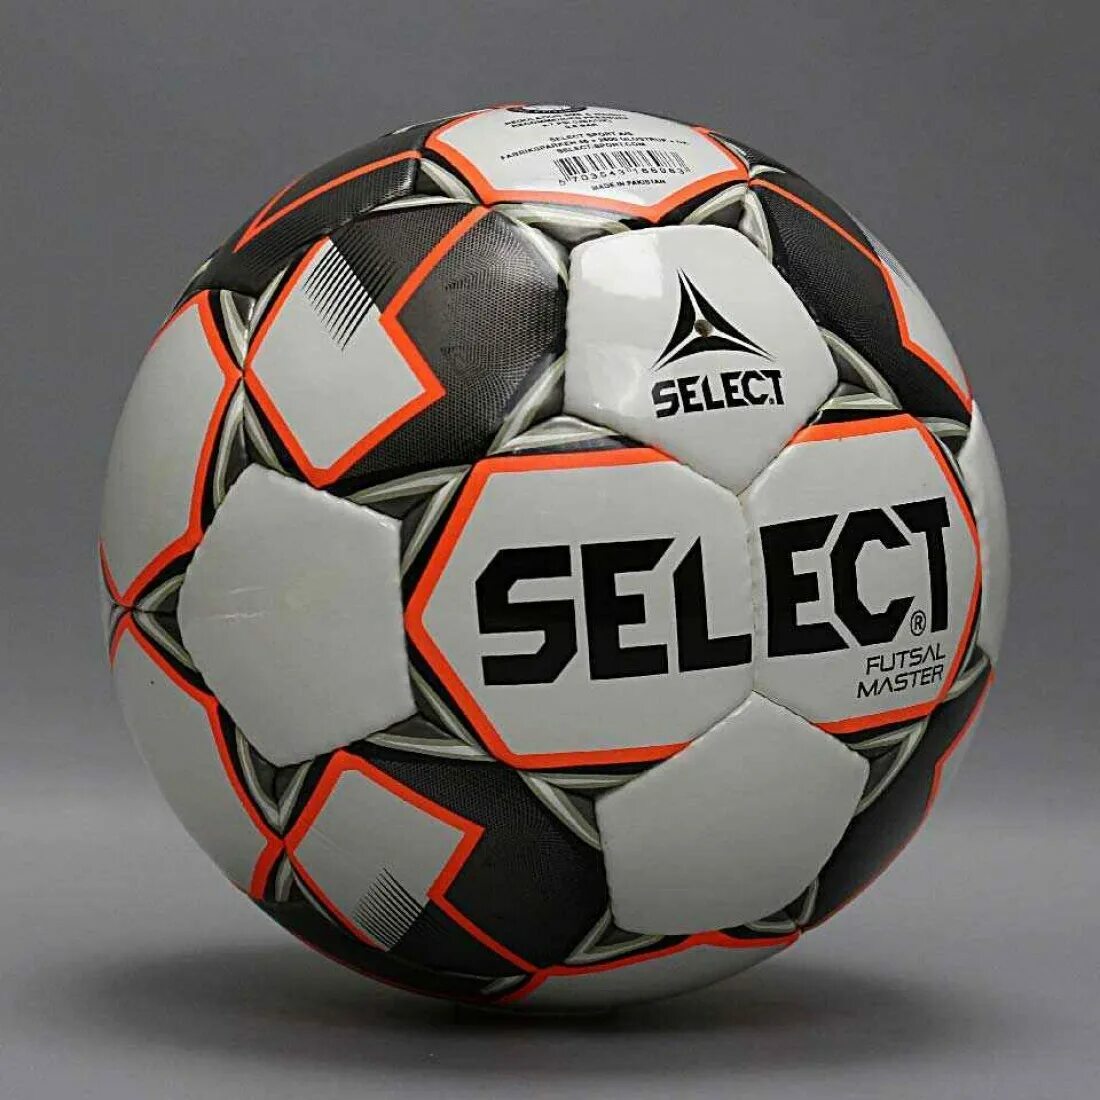 Футбольный мяч Селект 4. Футзальный мяч Селект. Мяч Селект 4 футзал. Мяч футбольный футзальный размер 4 select. Селект спб